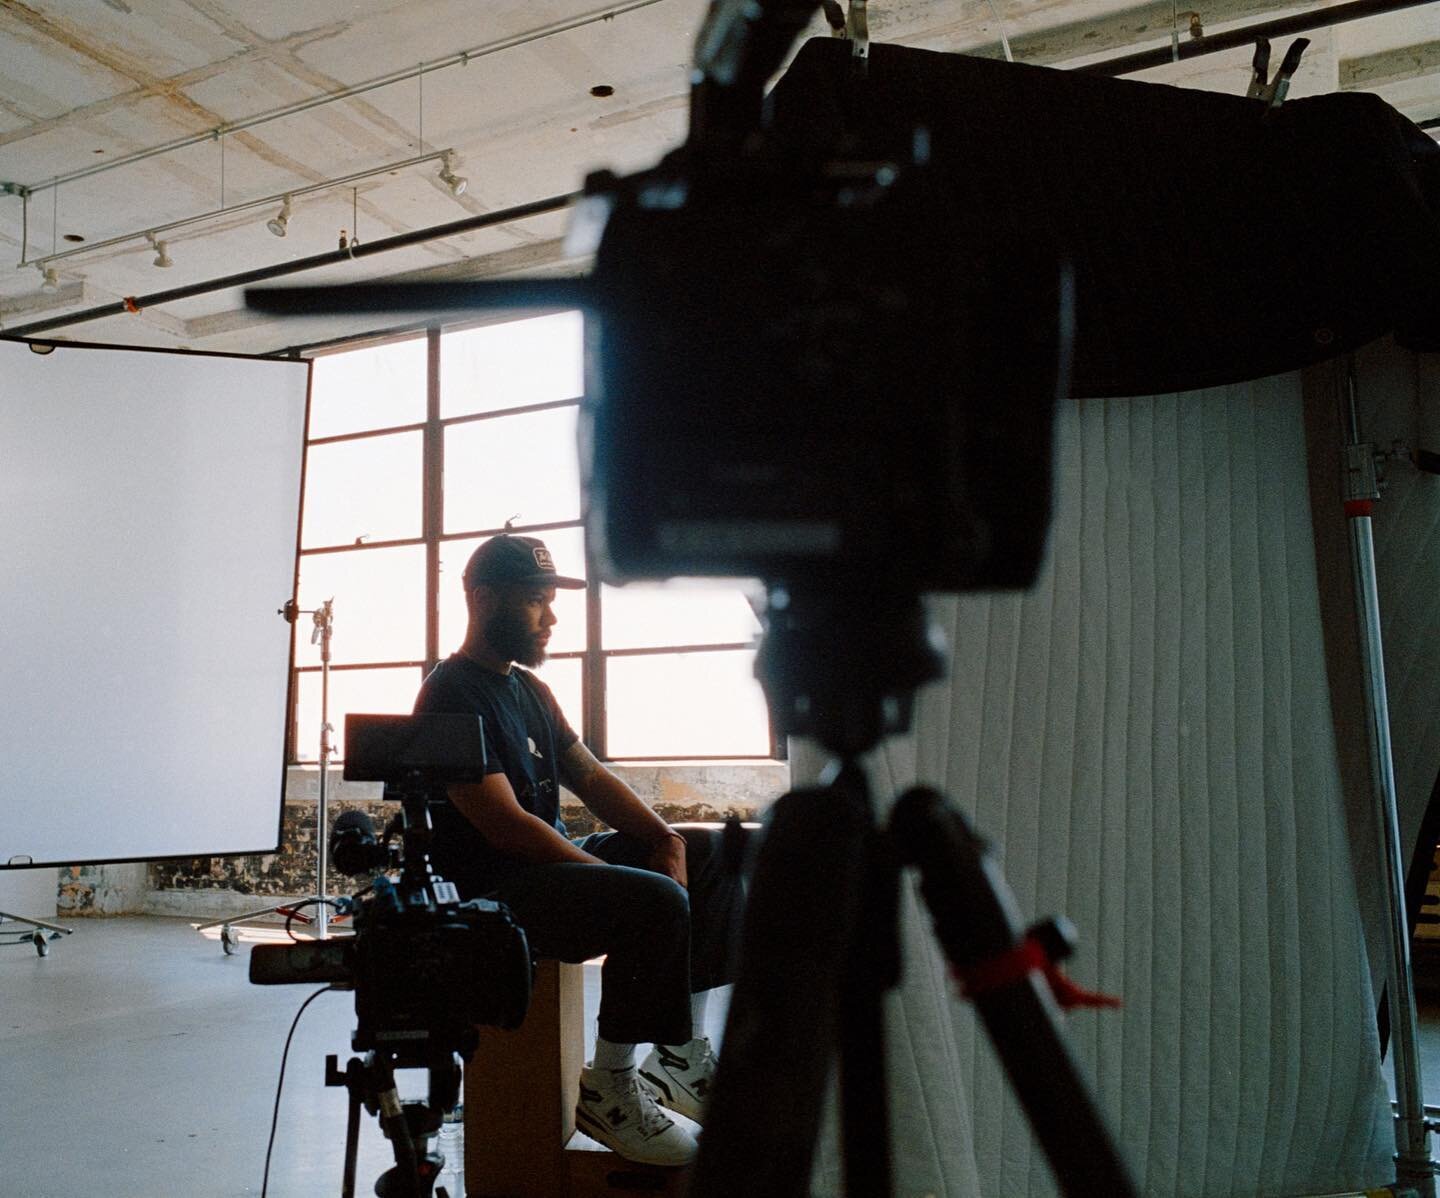 Our very own @nolis on set in in the studio this week. 

Photo: @geneyoon